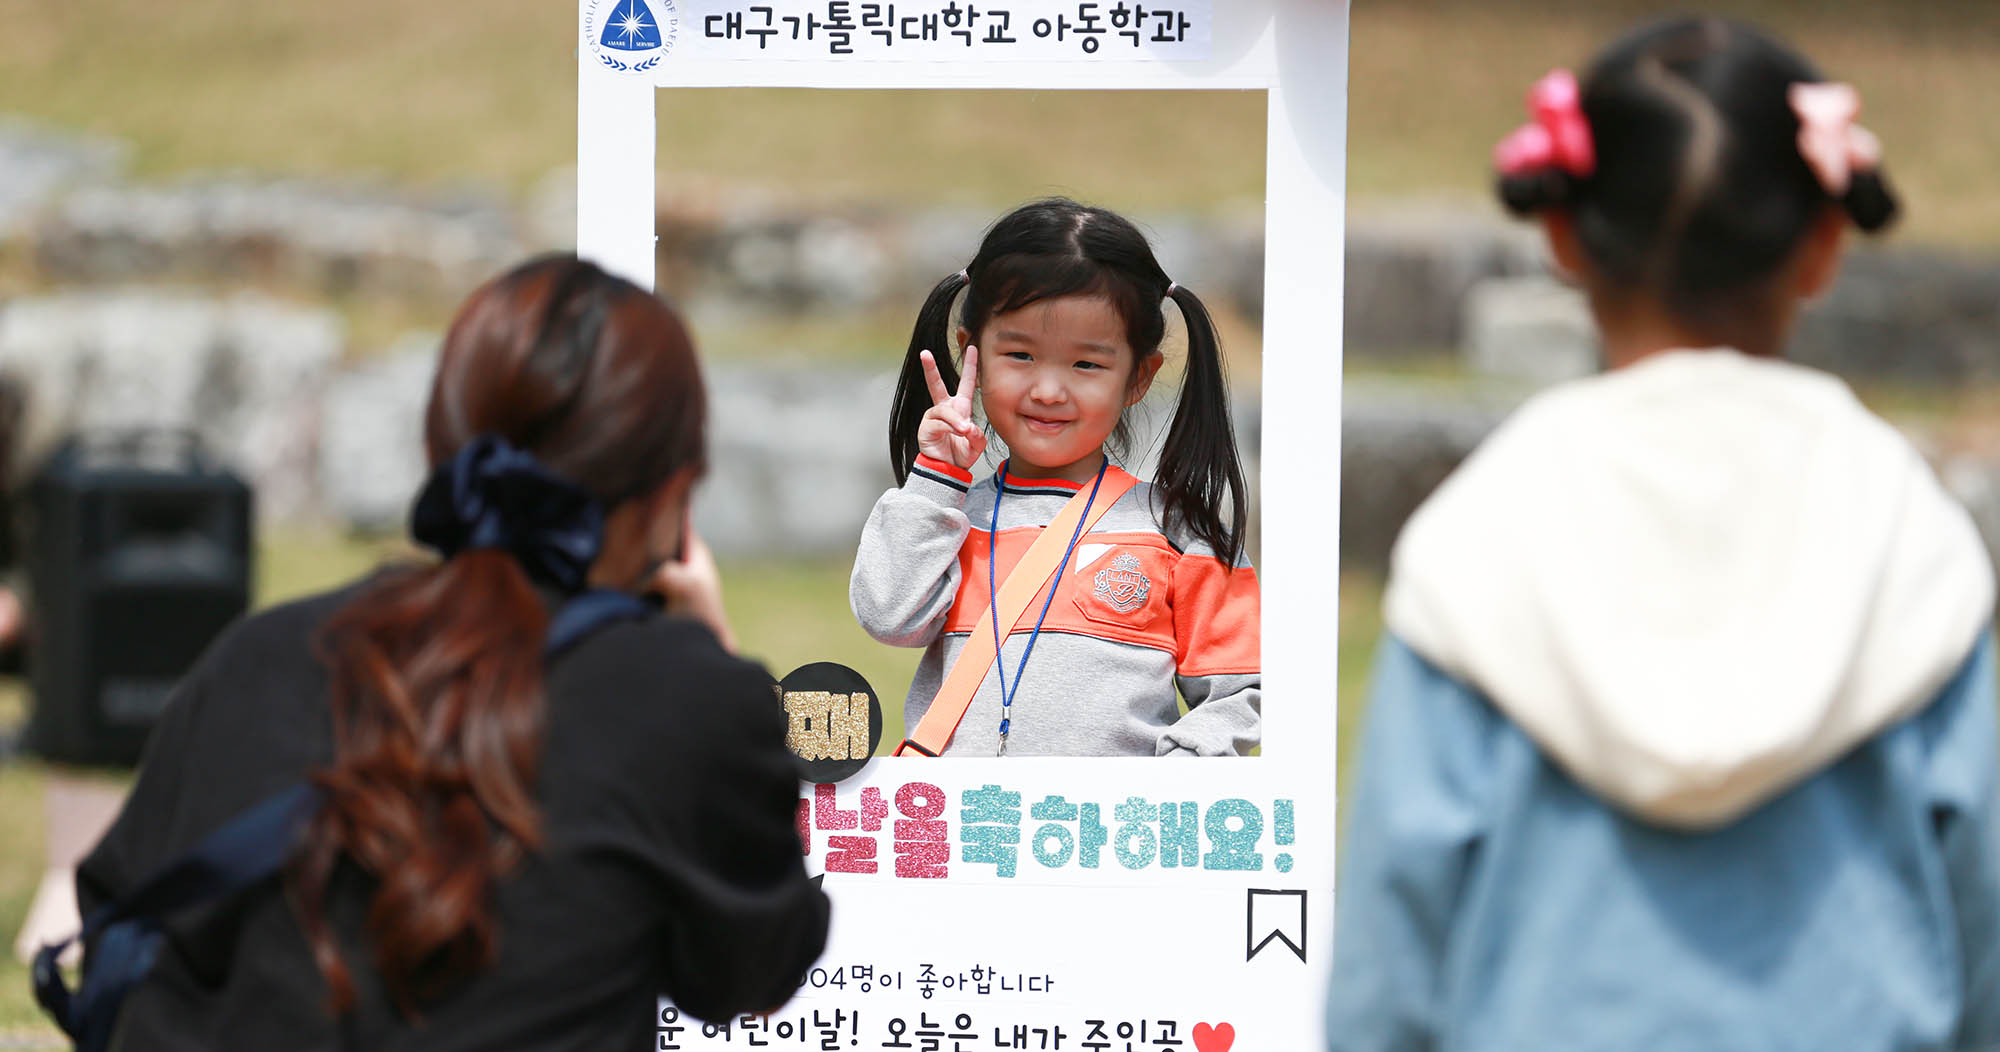 아동학과, 어린이날 101주년 기념 어린이 초청 행사 개최